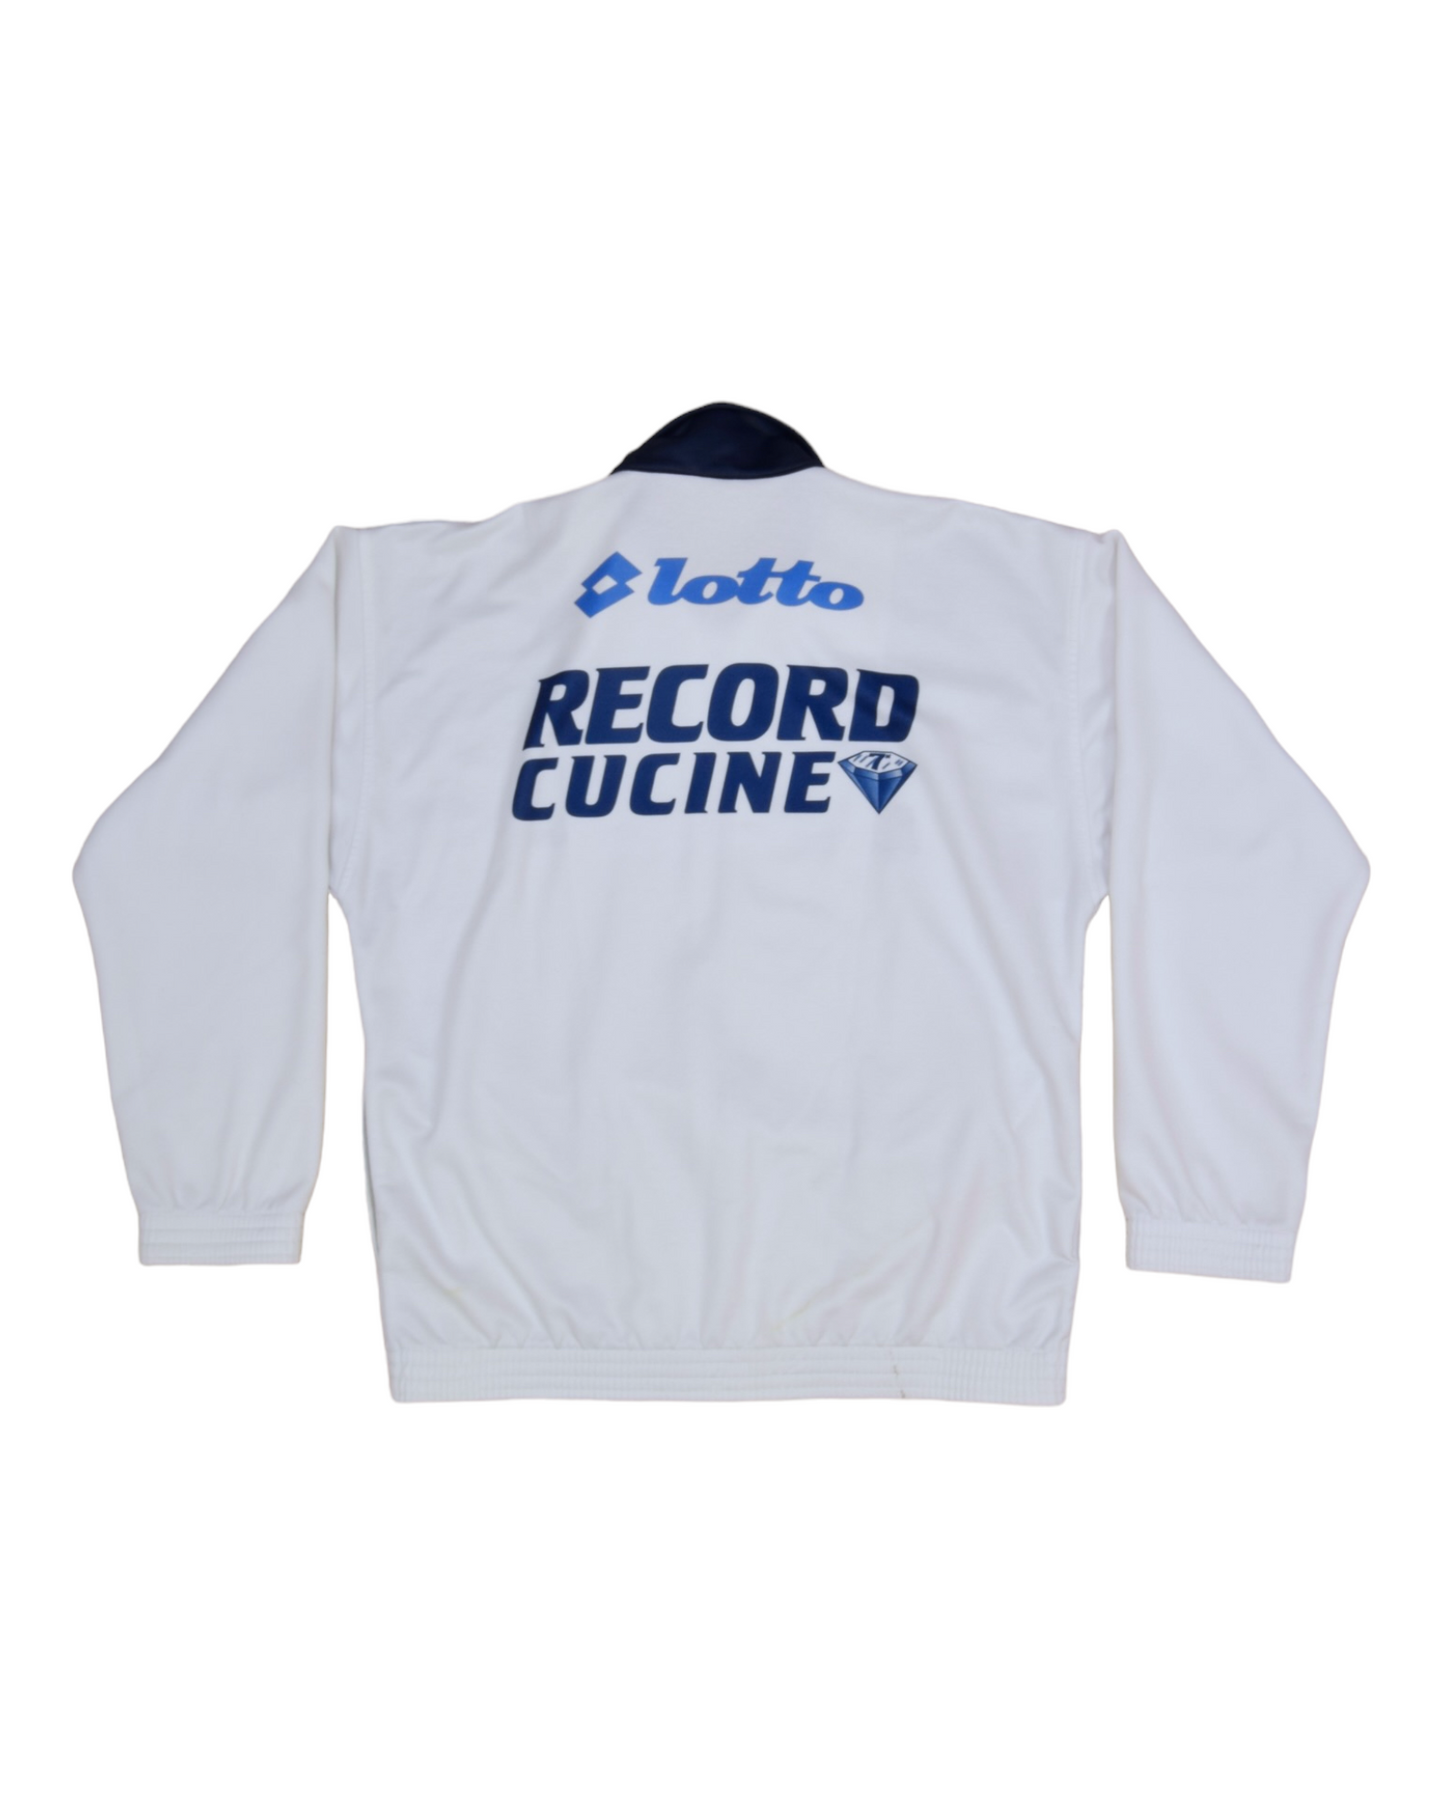 Vintage SSC Napoli Lotto Calcio Italia 1994 1995 1996 Jacket Record Cucine White Blue Size M